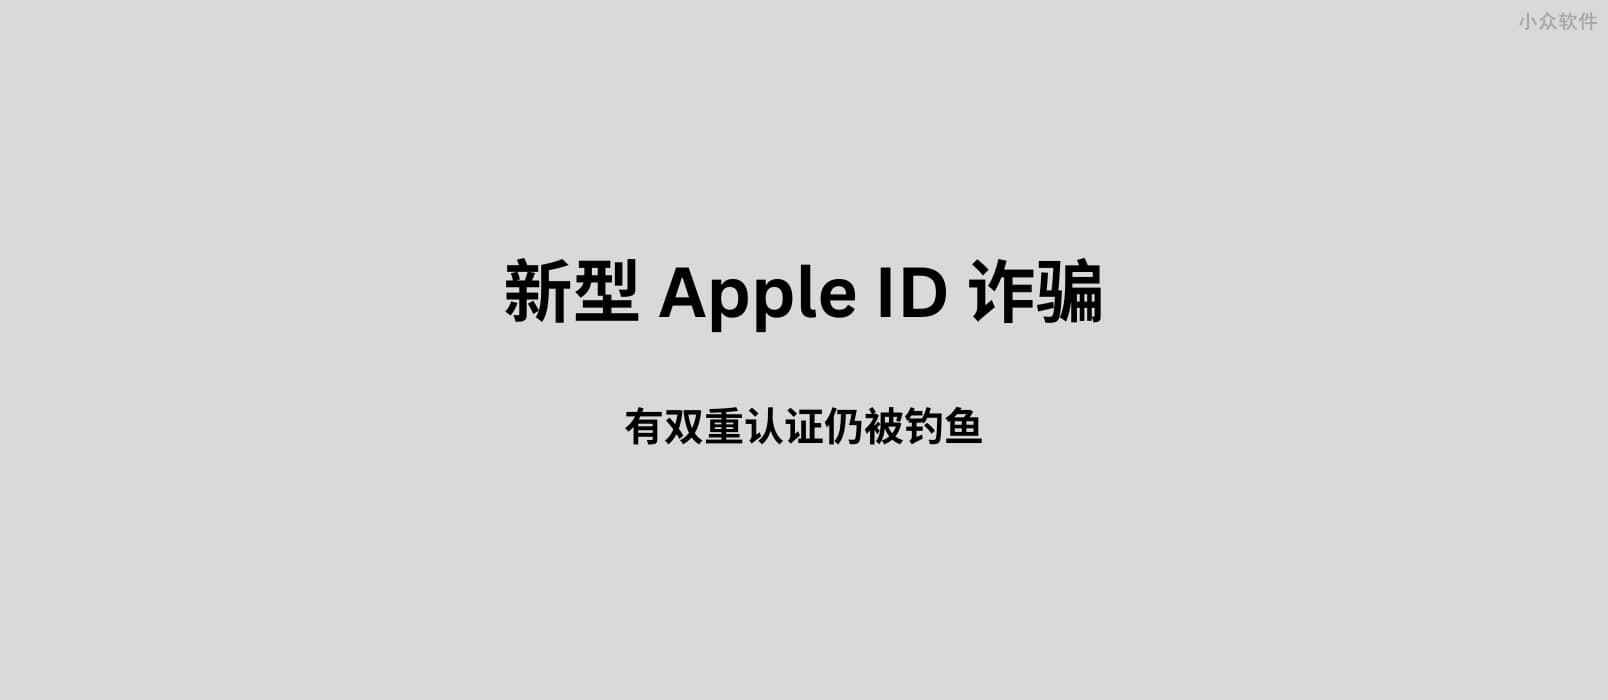 新型 Apple ID 诈骗：有双重认证仍被钓鱼。附一个可能的预防小技巧